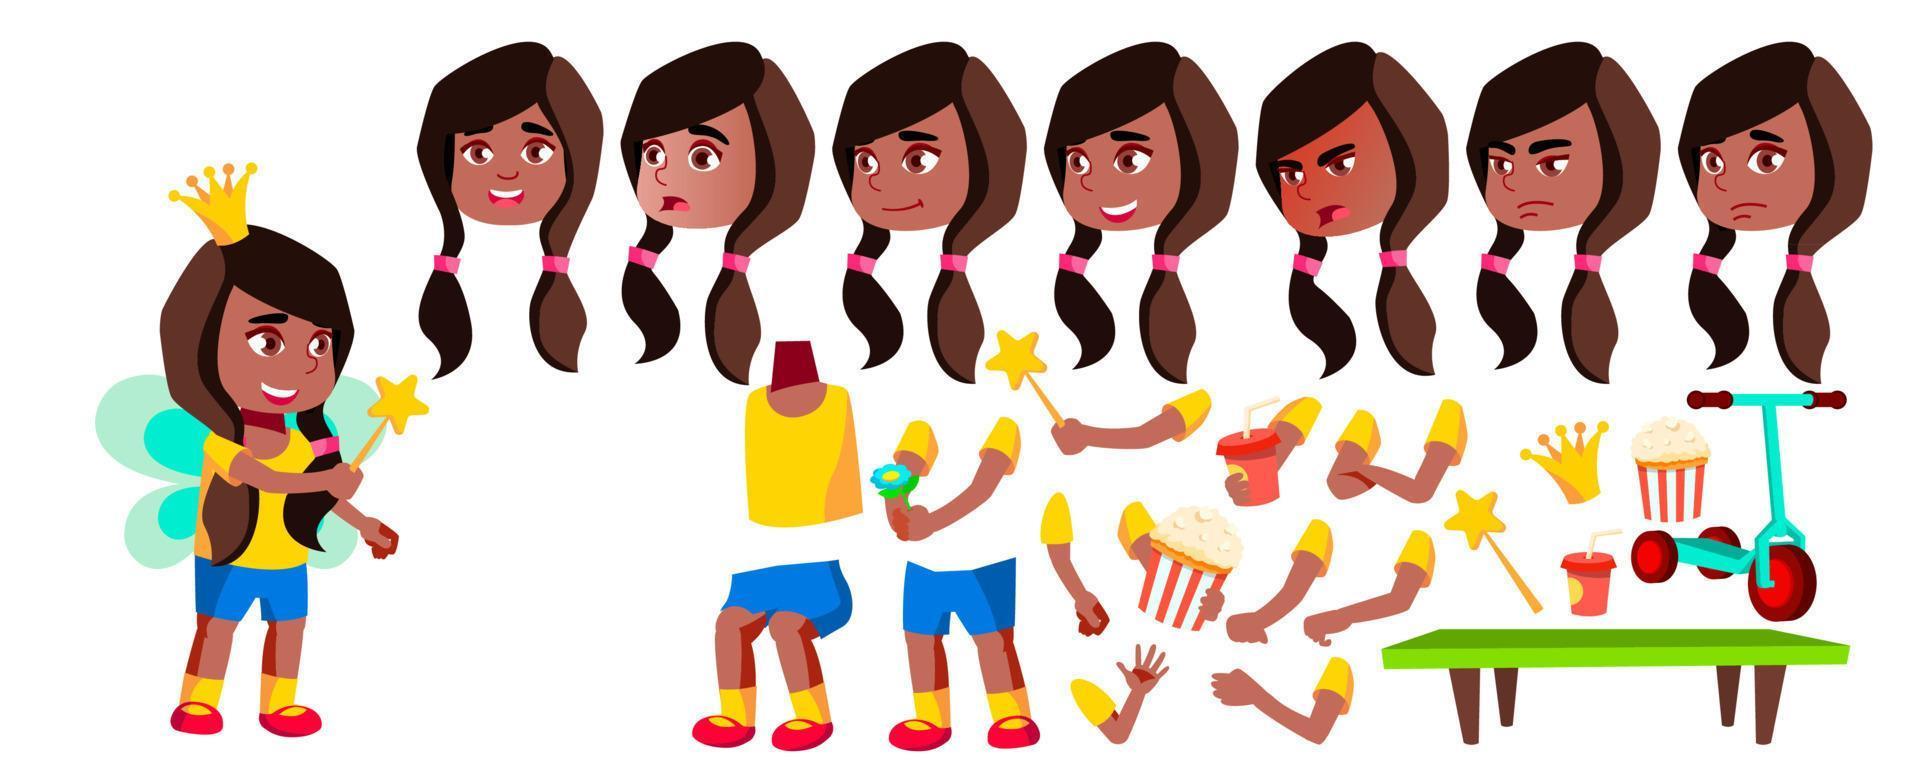 Mädchen Kindergarten Kind Vektor. Schwarz. Afroamerikaner. Animationserstellungsset. Gesicht Emotionen, Gesten. ziemlich positiv Baby. Freizeit. für web, broschüre, plakatdesign. animiert. isolierte Abbildung vektor